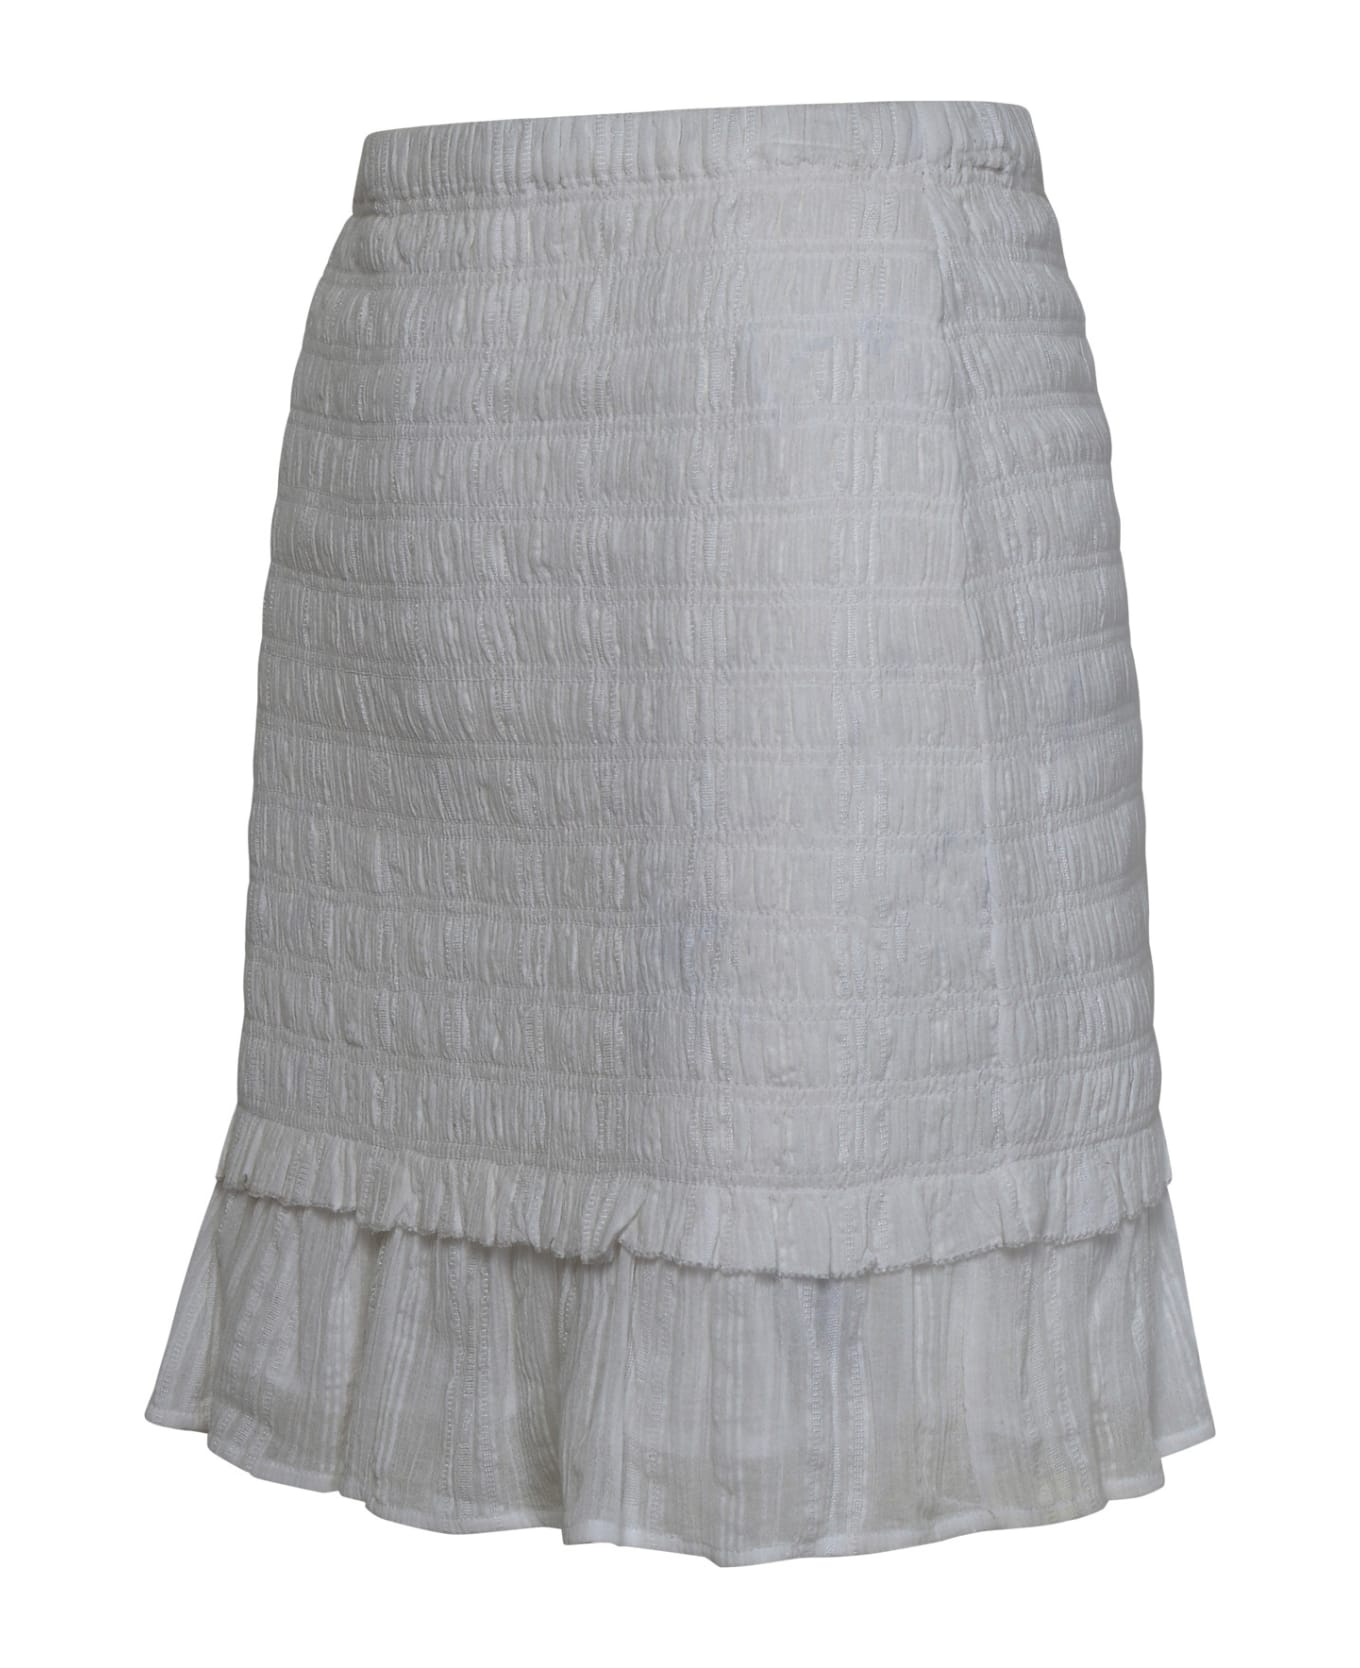 Marant Étoile 'dorela' White Cotton Miniskirt - White